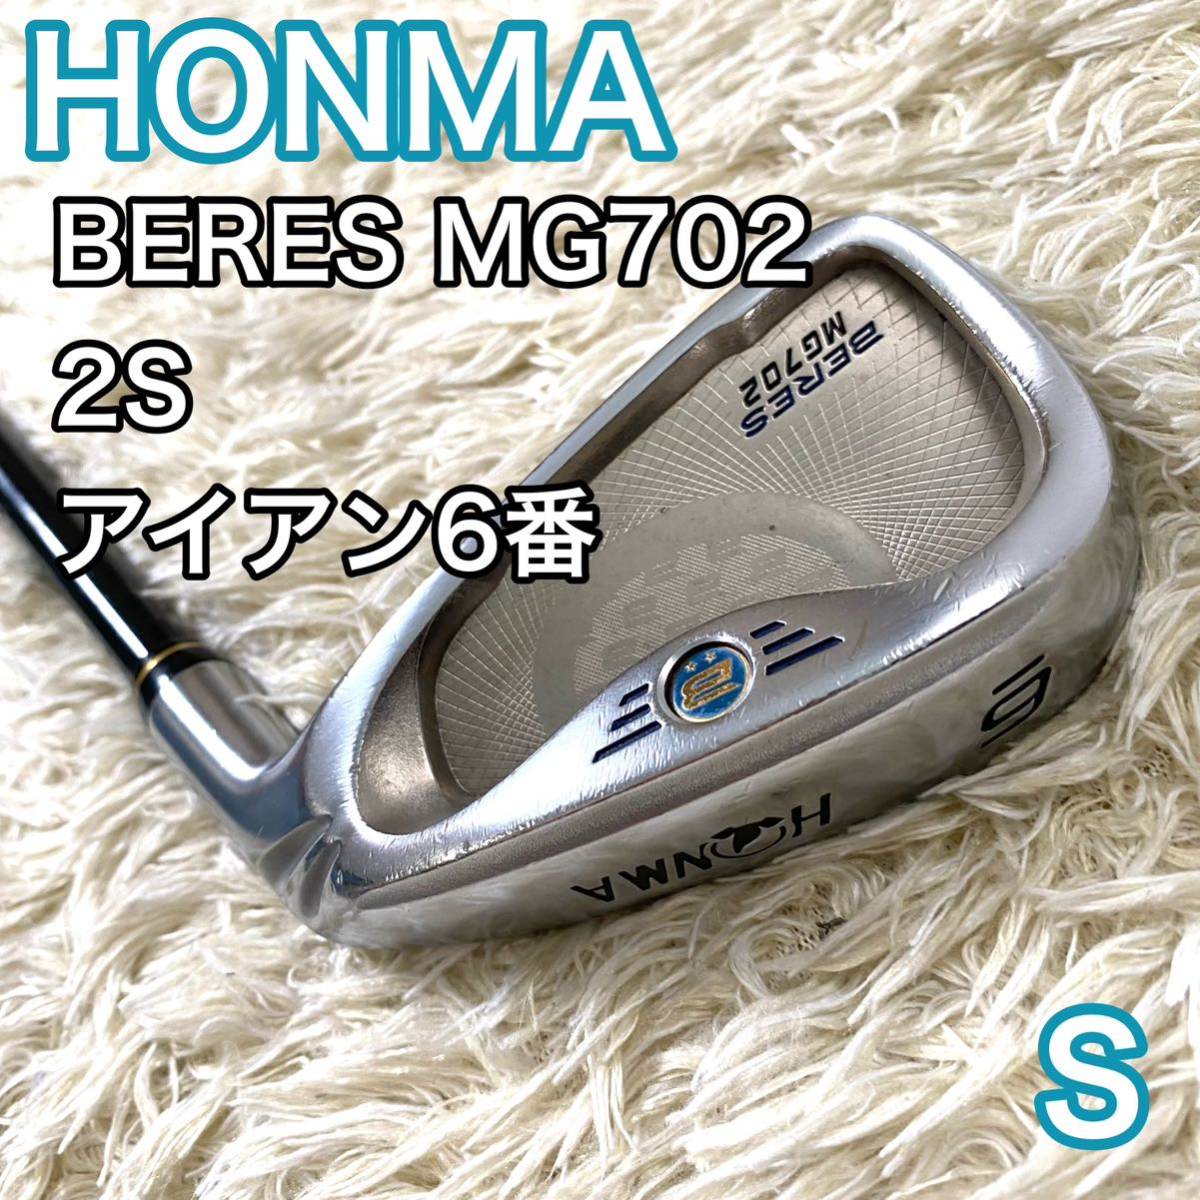 ホンマ ベレス MG702 アイアン6番 2星 右利き ゴルフクラブ S HONMA BERES